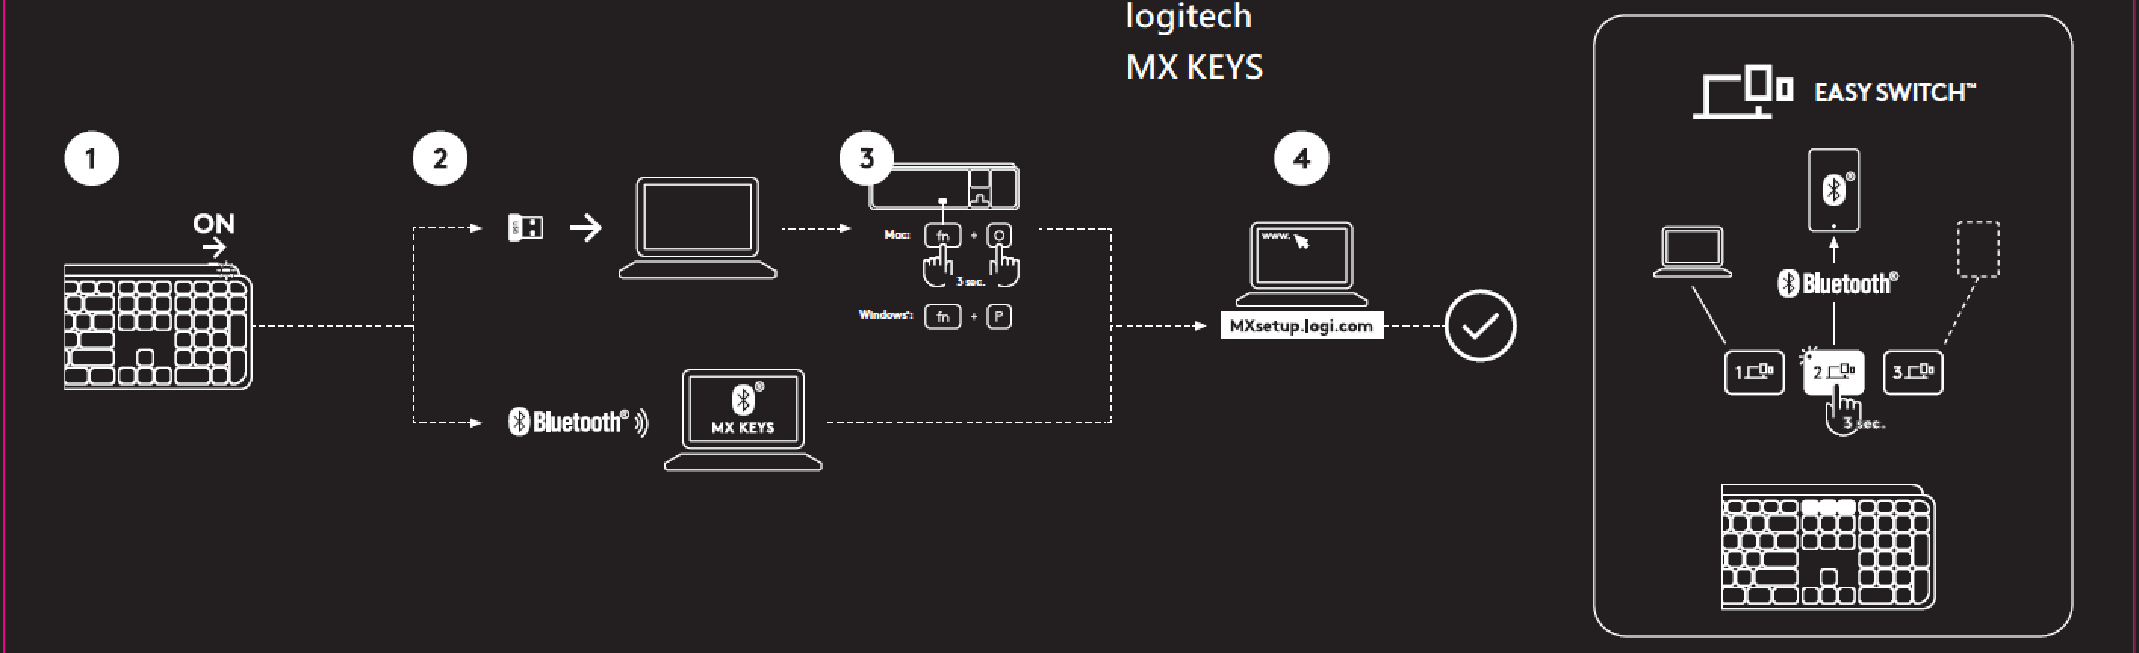 Logitech East Wireless Keyboard User Manual